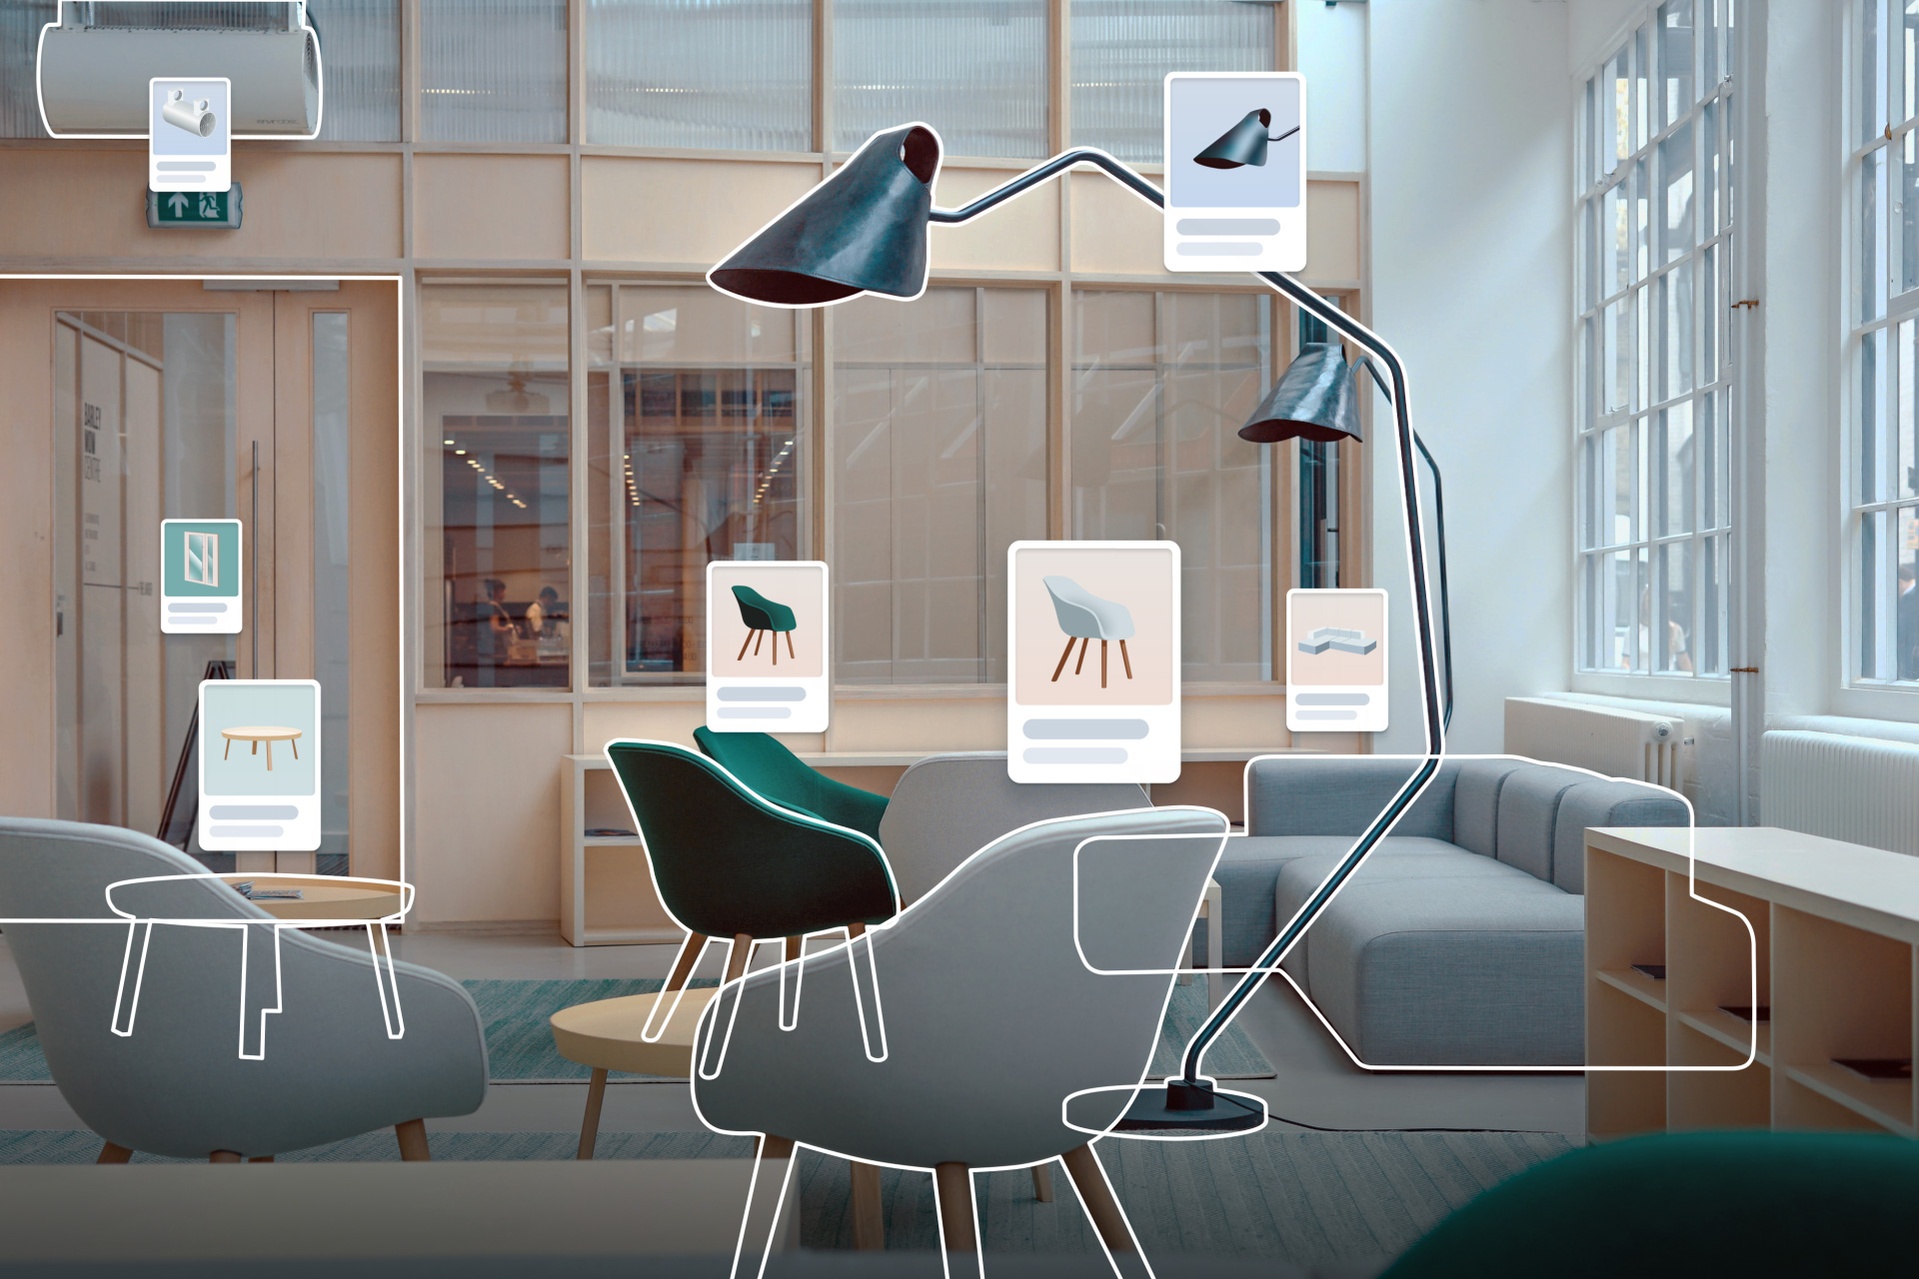 Grafisk visualisering av en interiör med möbler